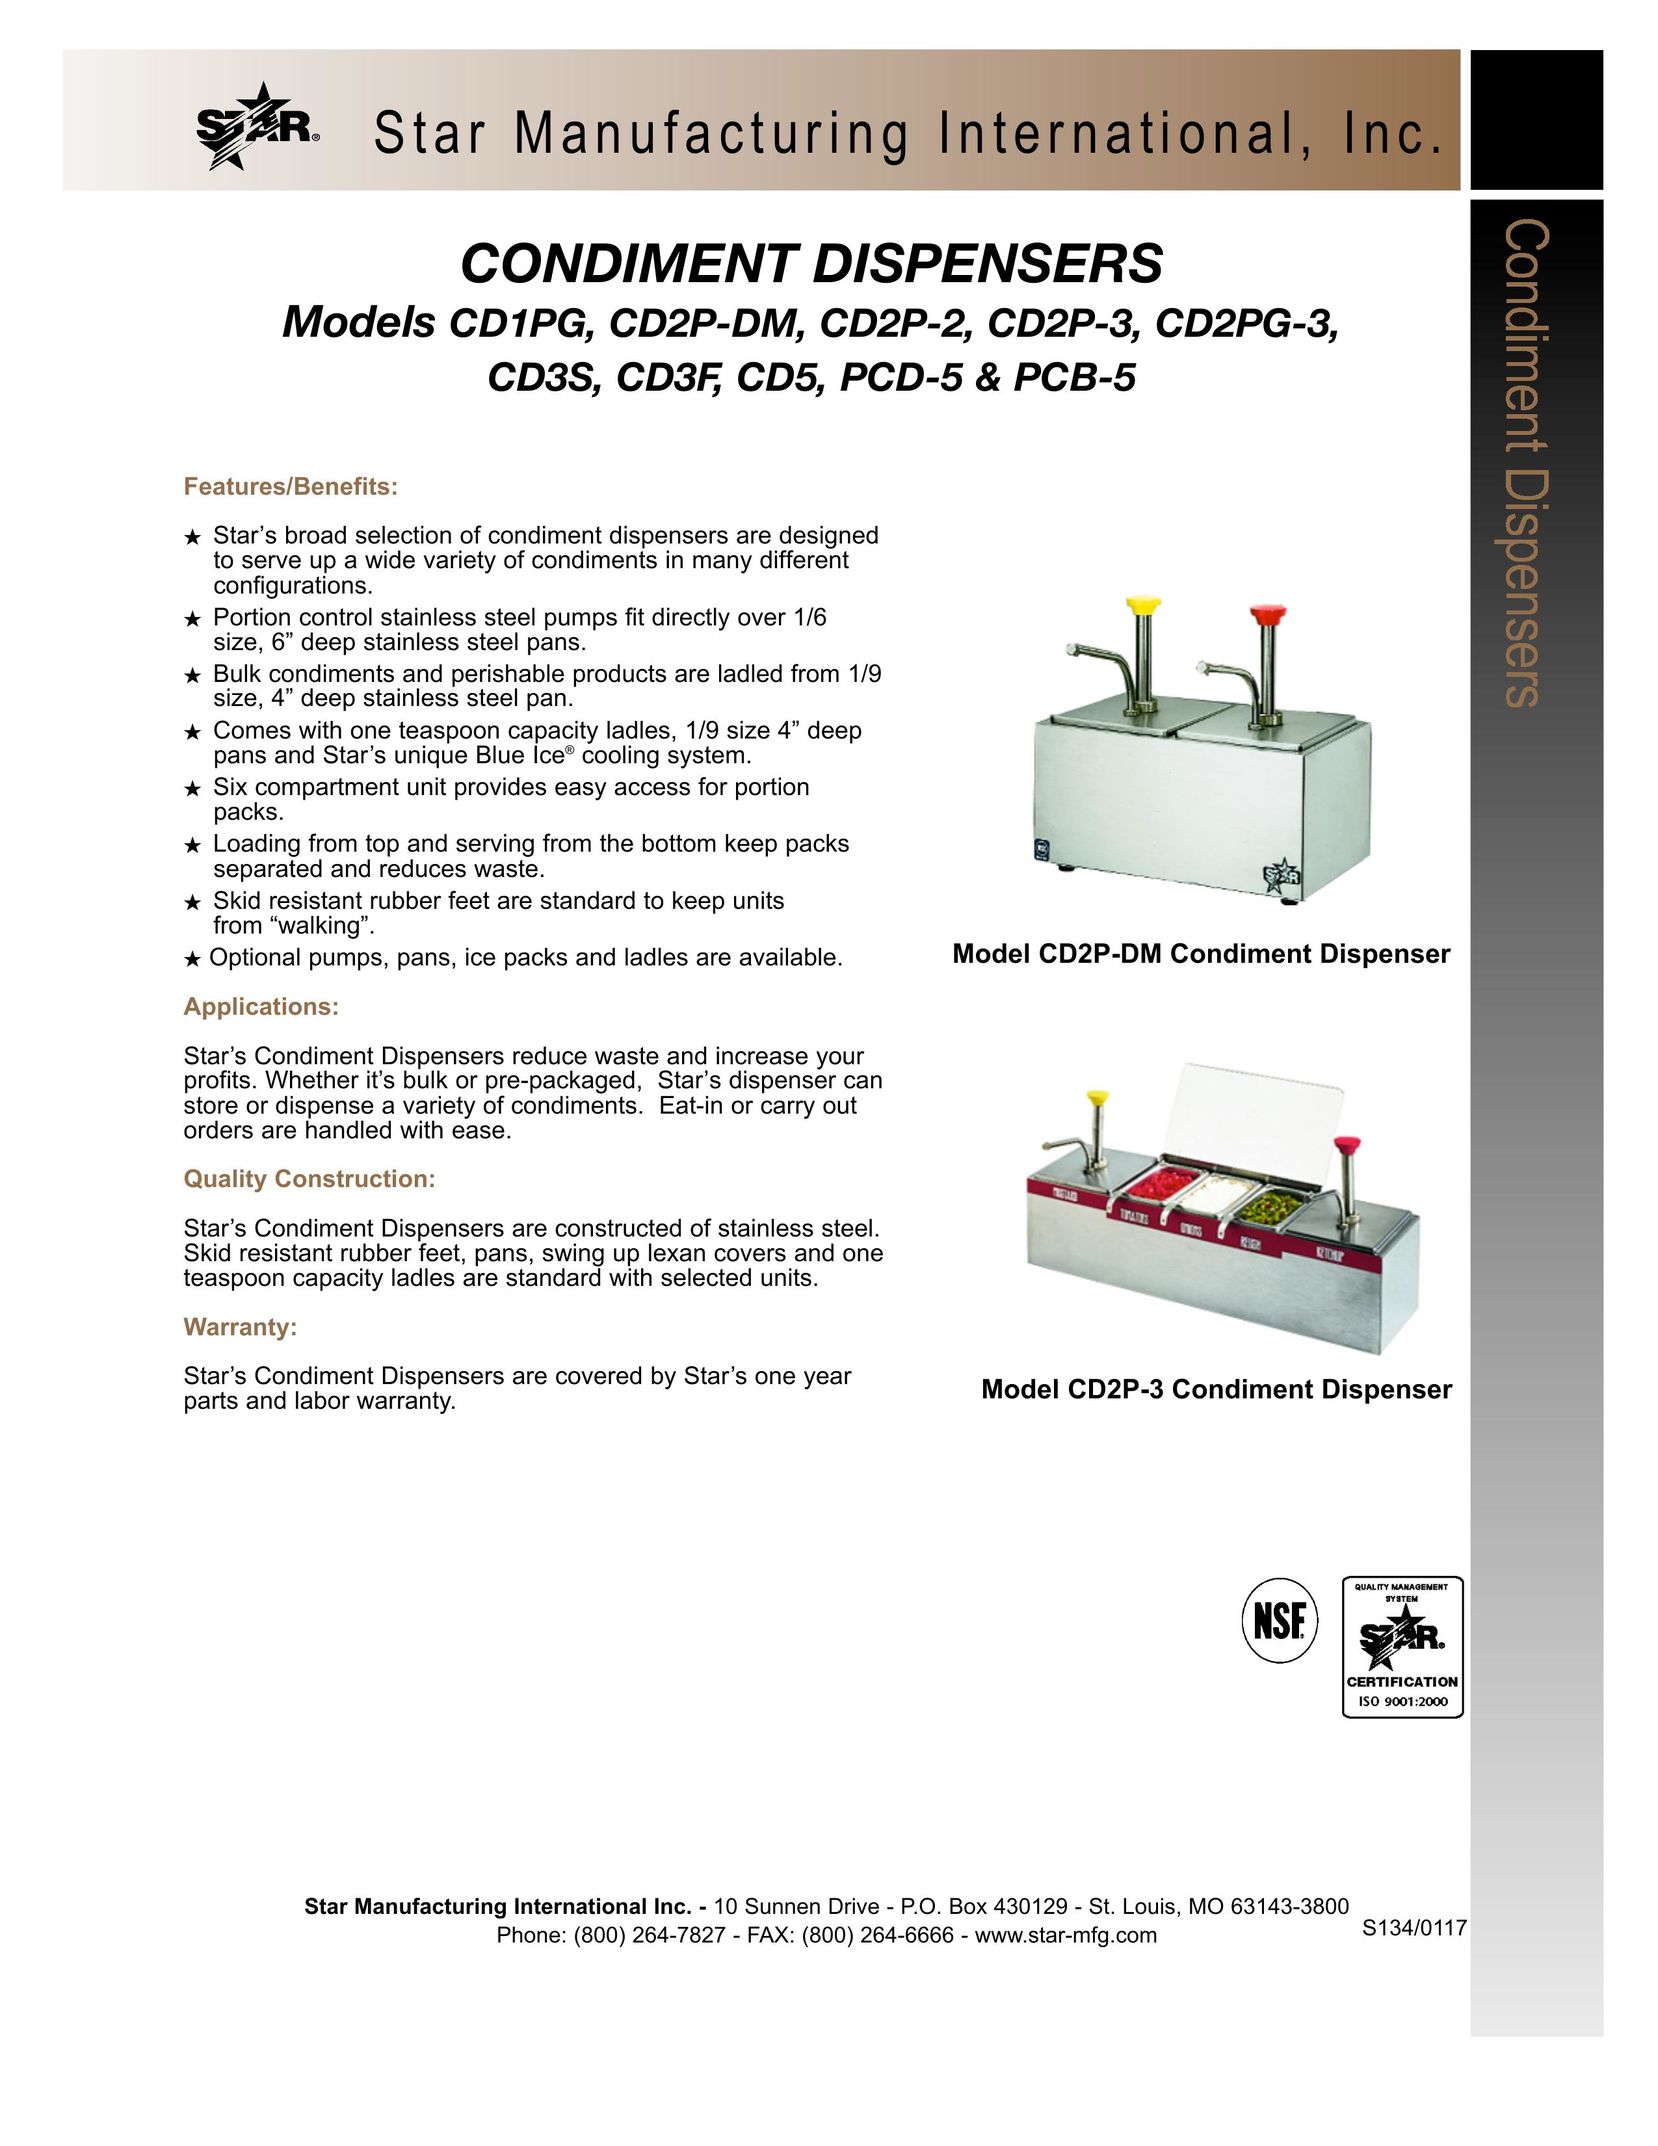 Star Manufacturing CD2PG-3 Beverage Dispenser User Manual